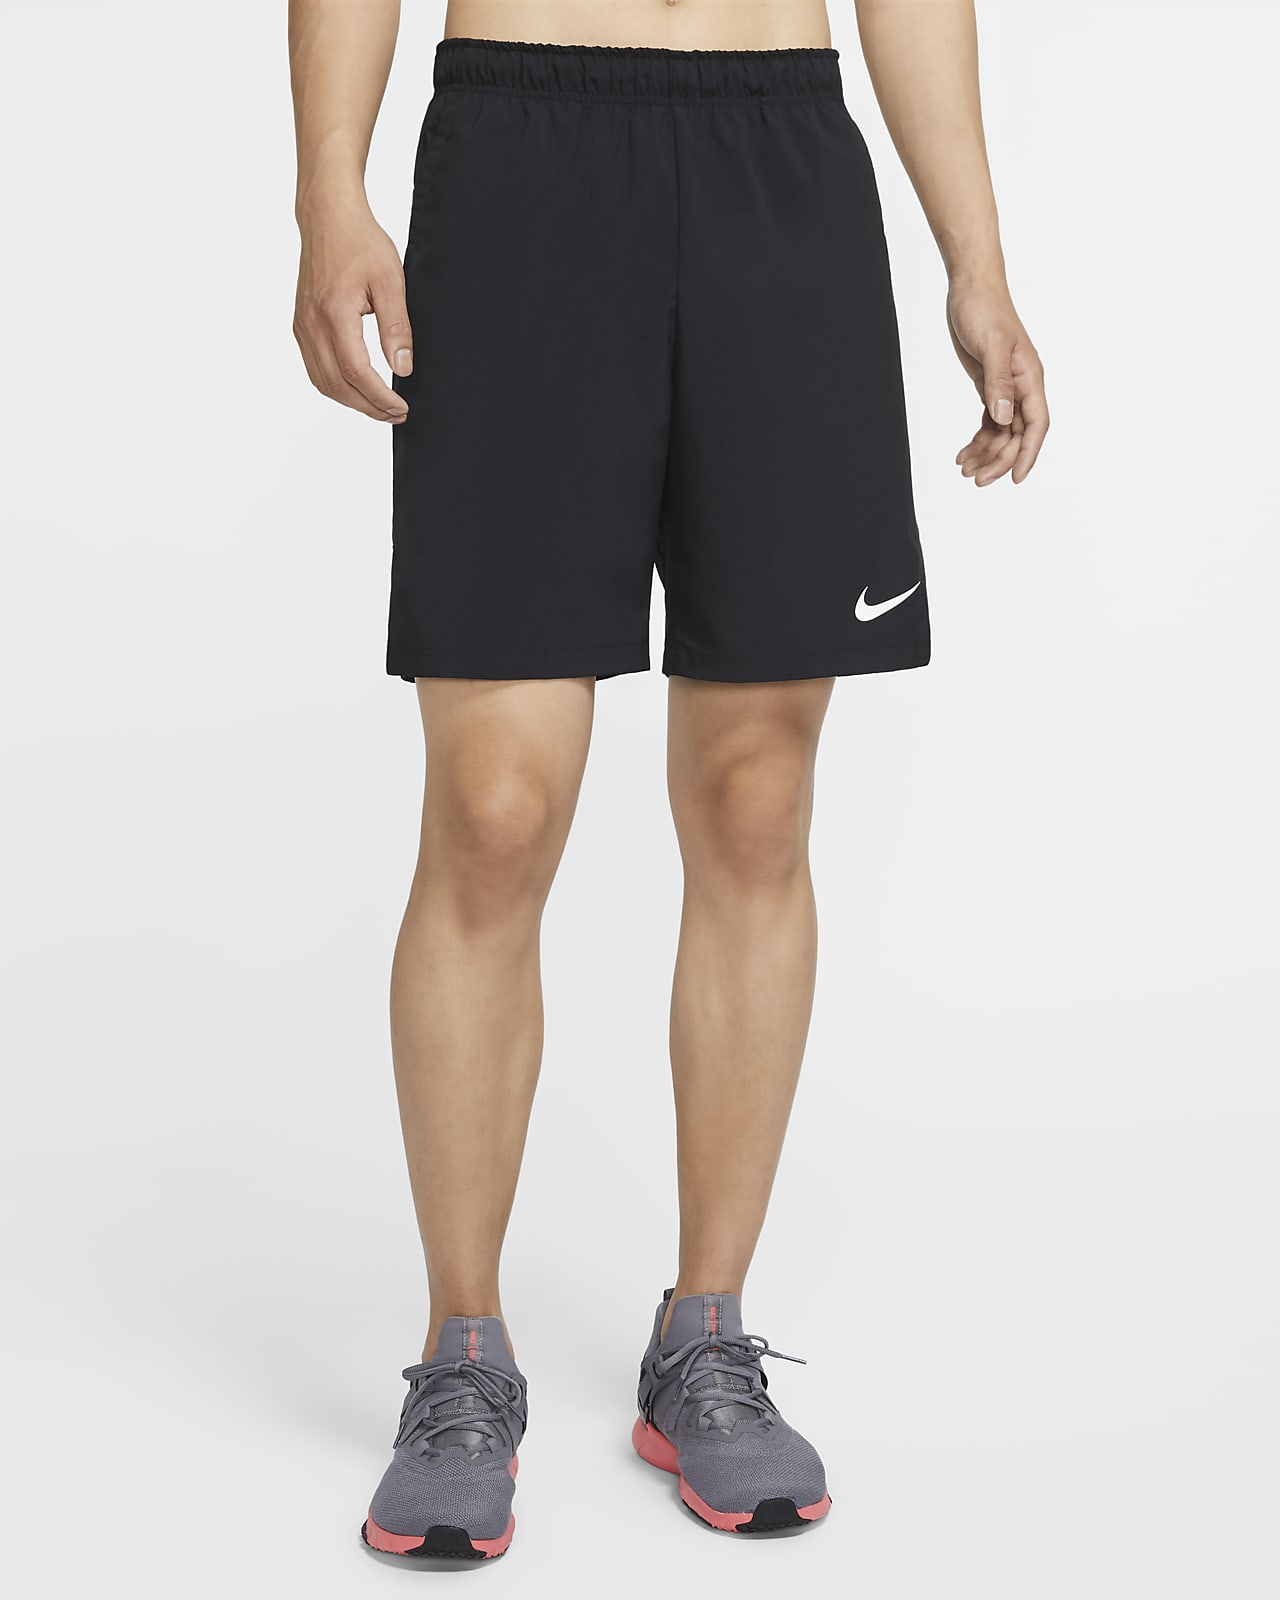 Nike Flex Pantalons curts de teixit Woven d'entrenament - Home